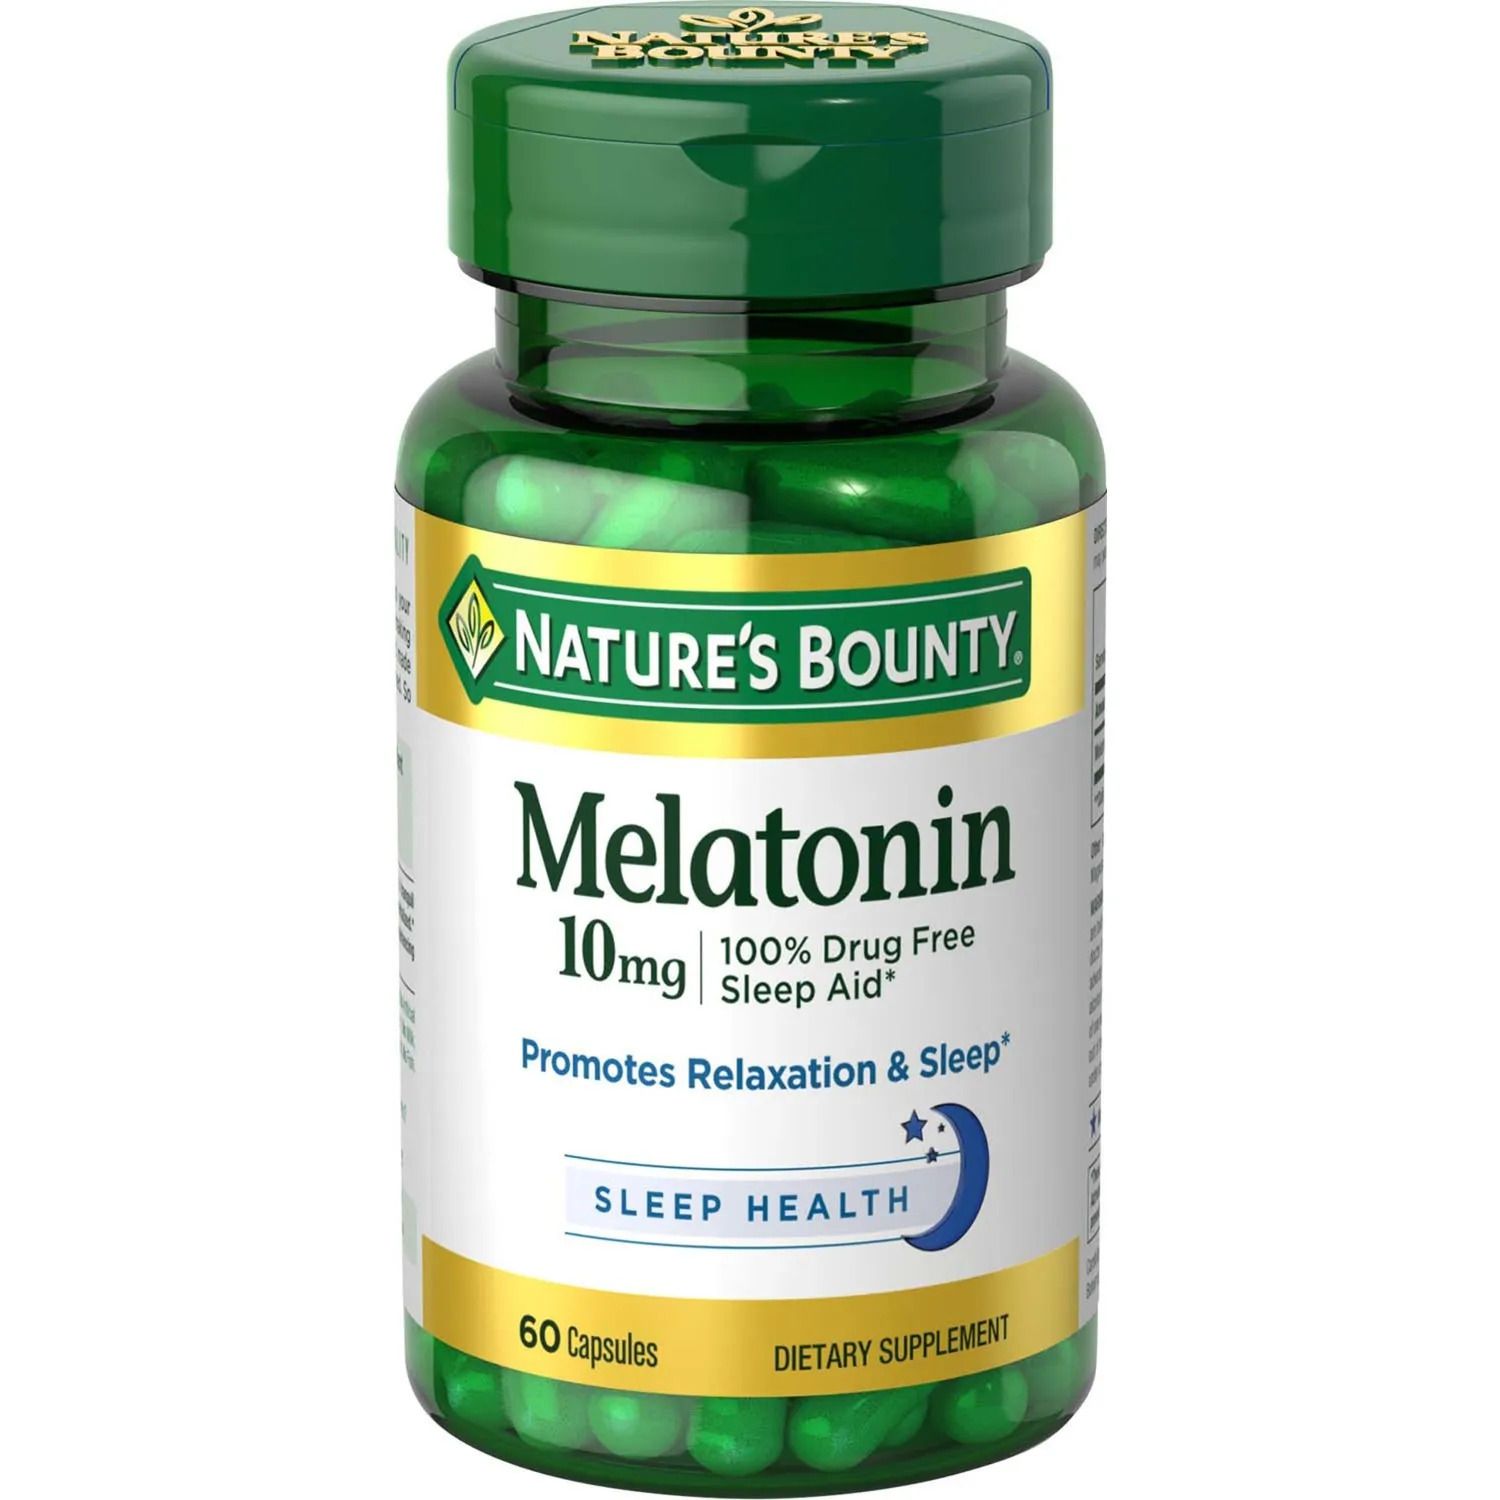 Nature's Bounty Melatonin Capsules, 10 mg - 60 ct